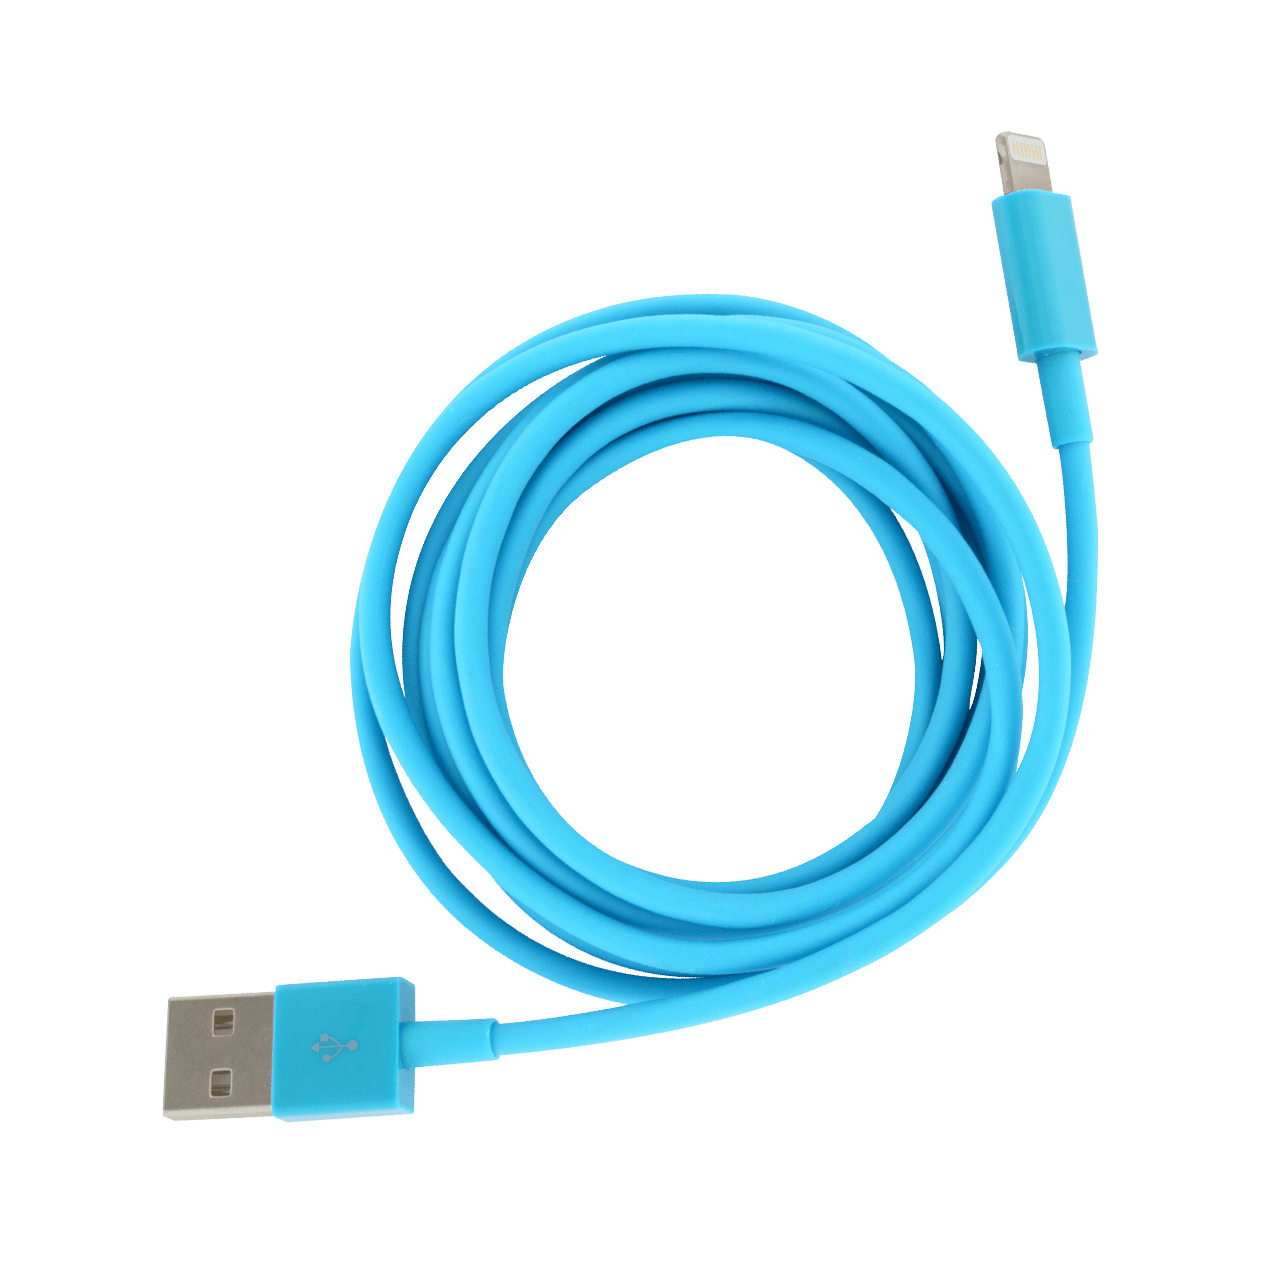 Cable pour iphone - Usb Xl - Bleu - Pylones